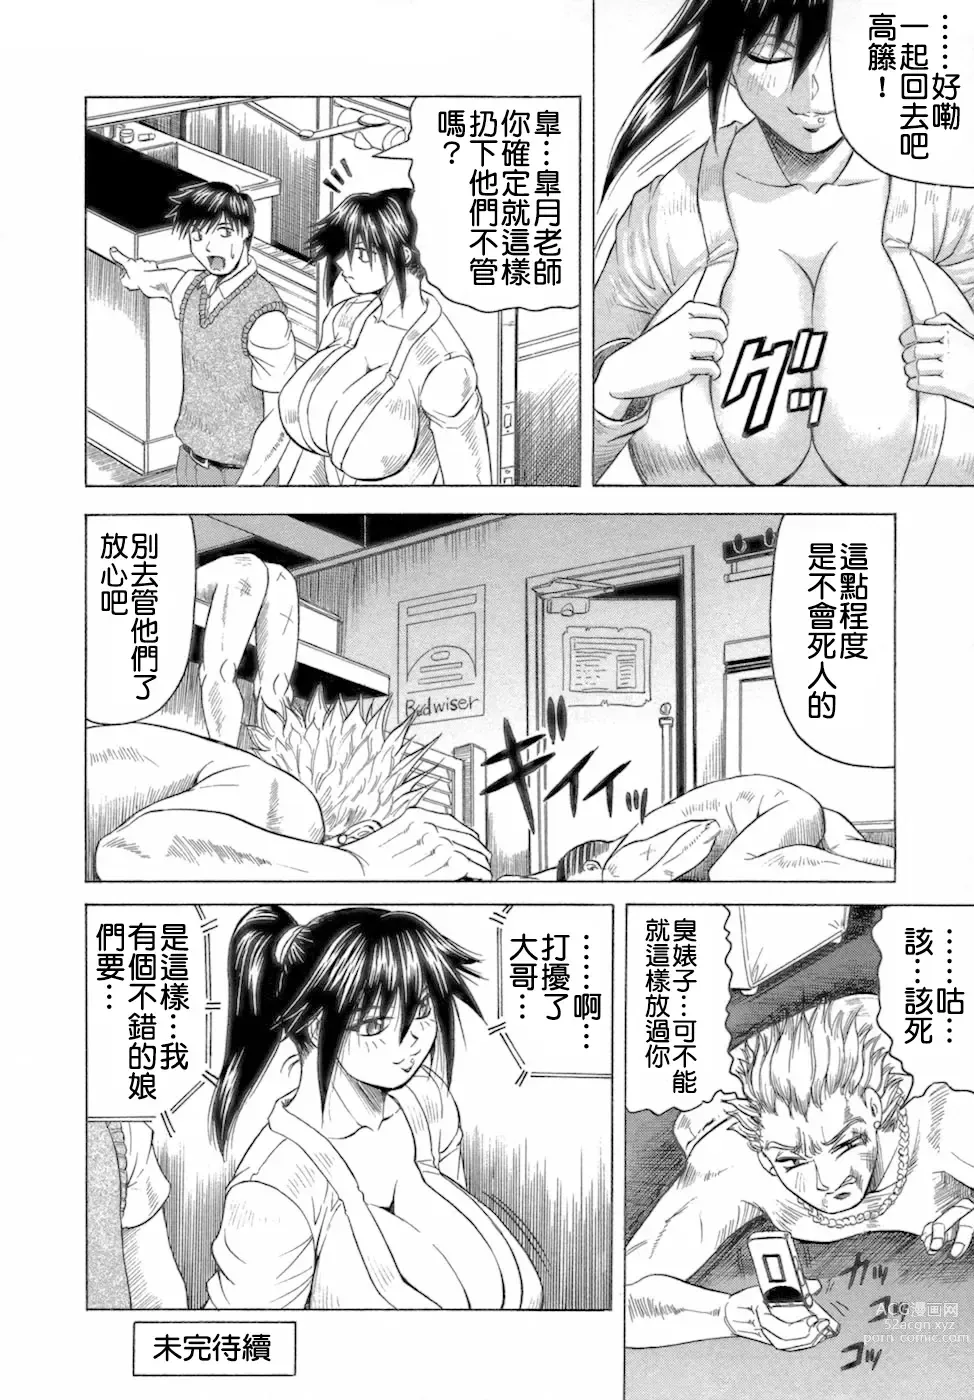 Page 64 of manga Ichigeki Nousatsu Satsuki-sensei